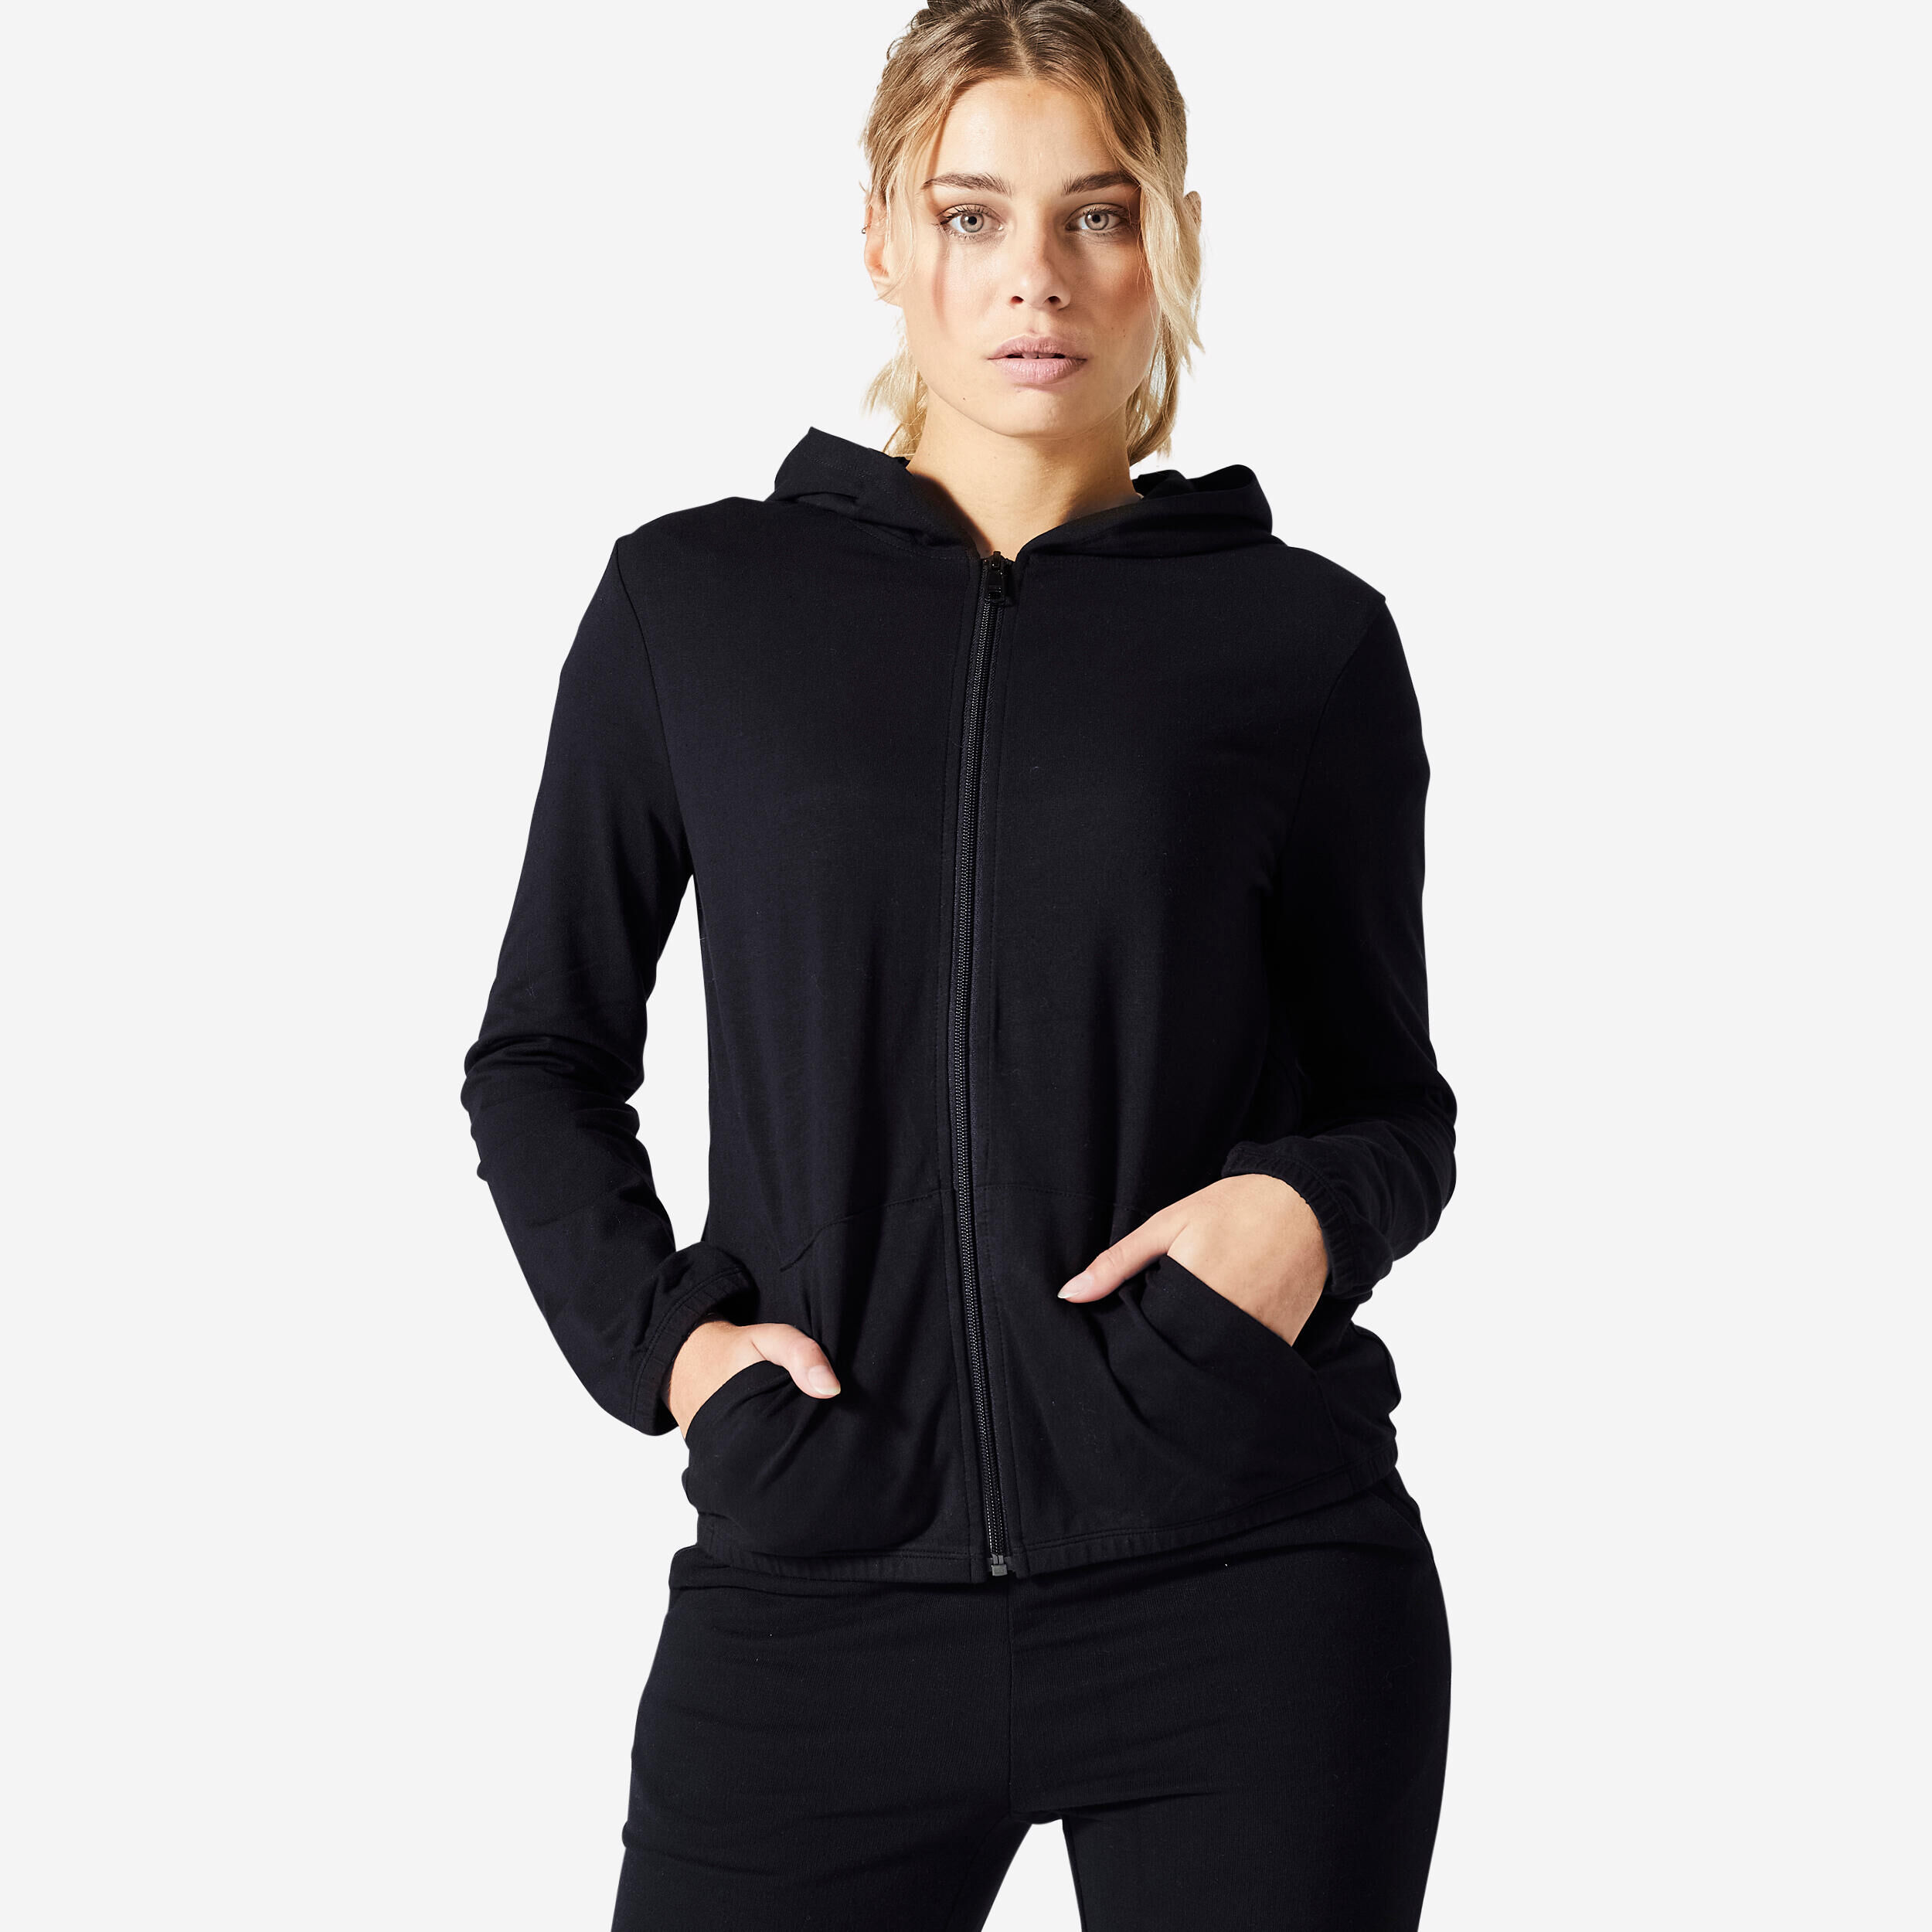 DOMYOS Women's Fitness Zip-Up Sweatshirt 100 - Black